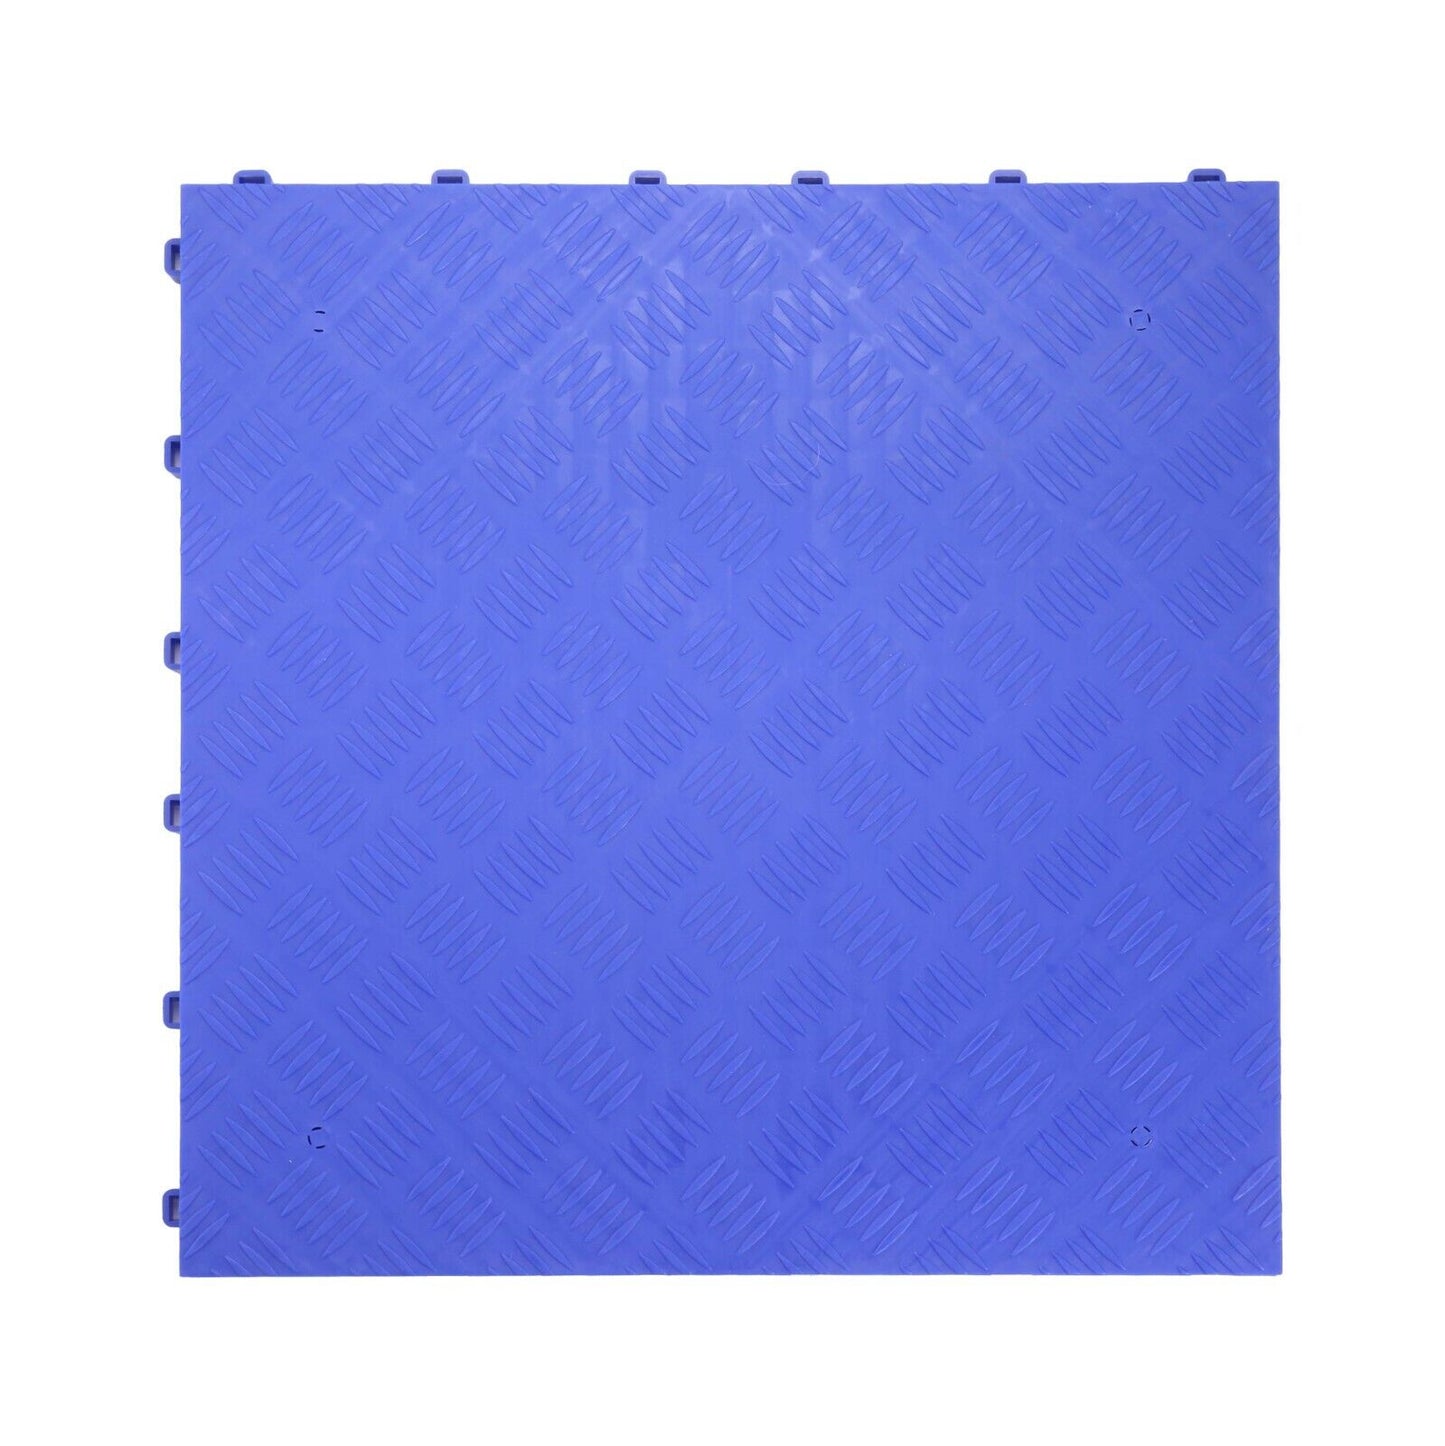 Nicoman Heavy Duty Solid Garage Floor Tiles Blue Tiles